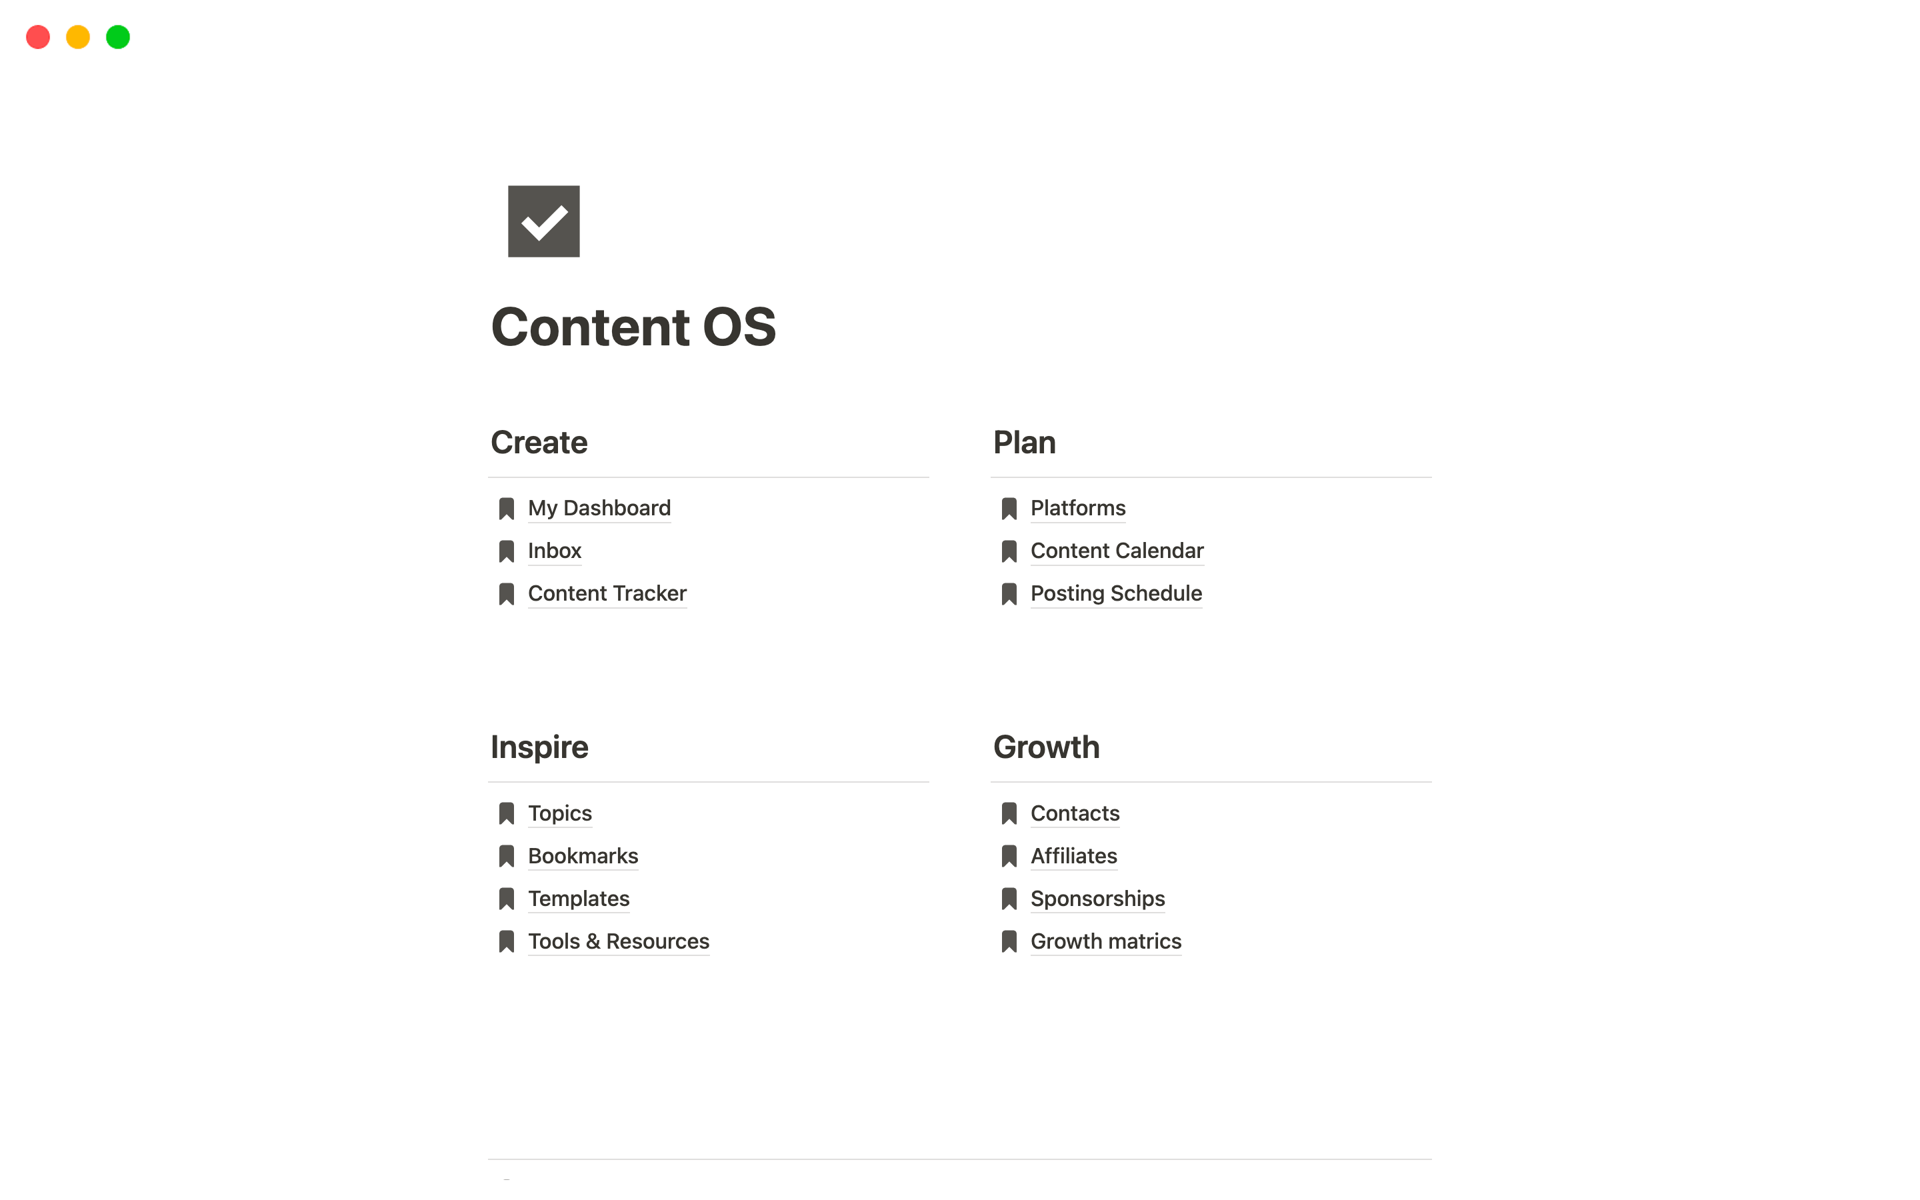 Vista previa de una plantilla para Content OS